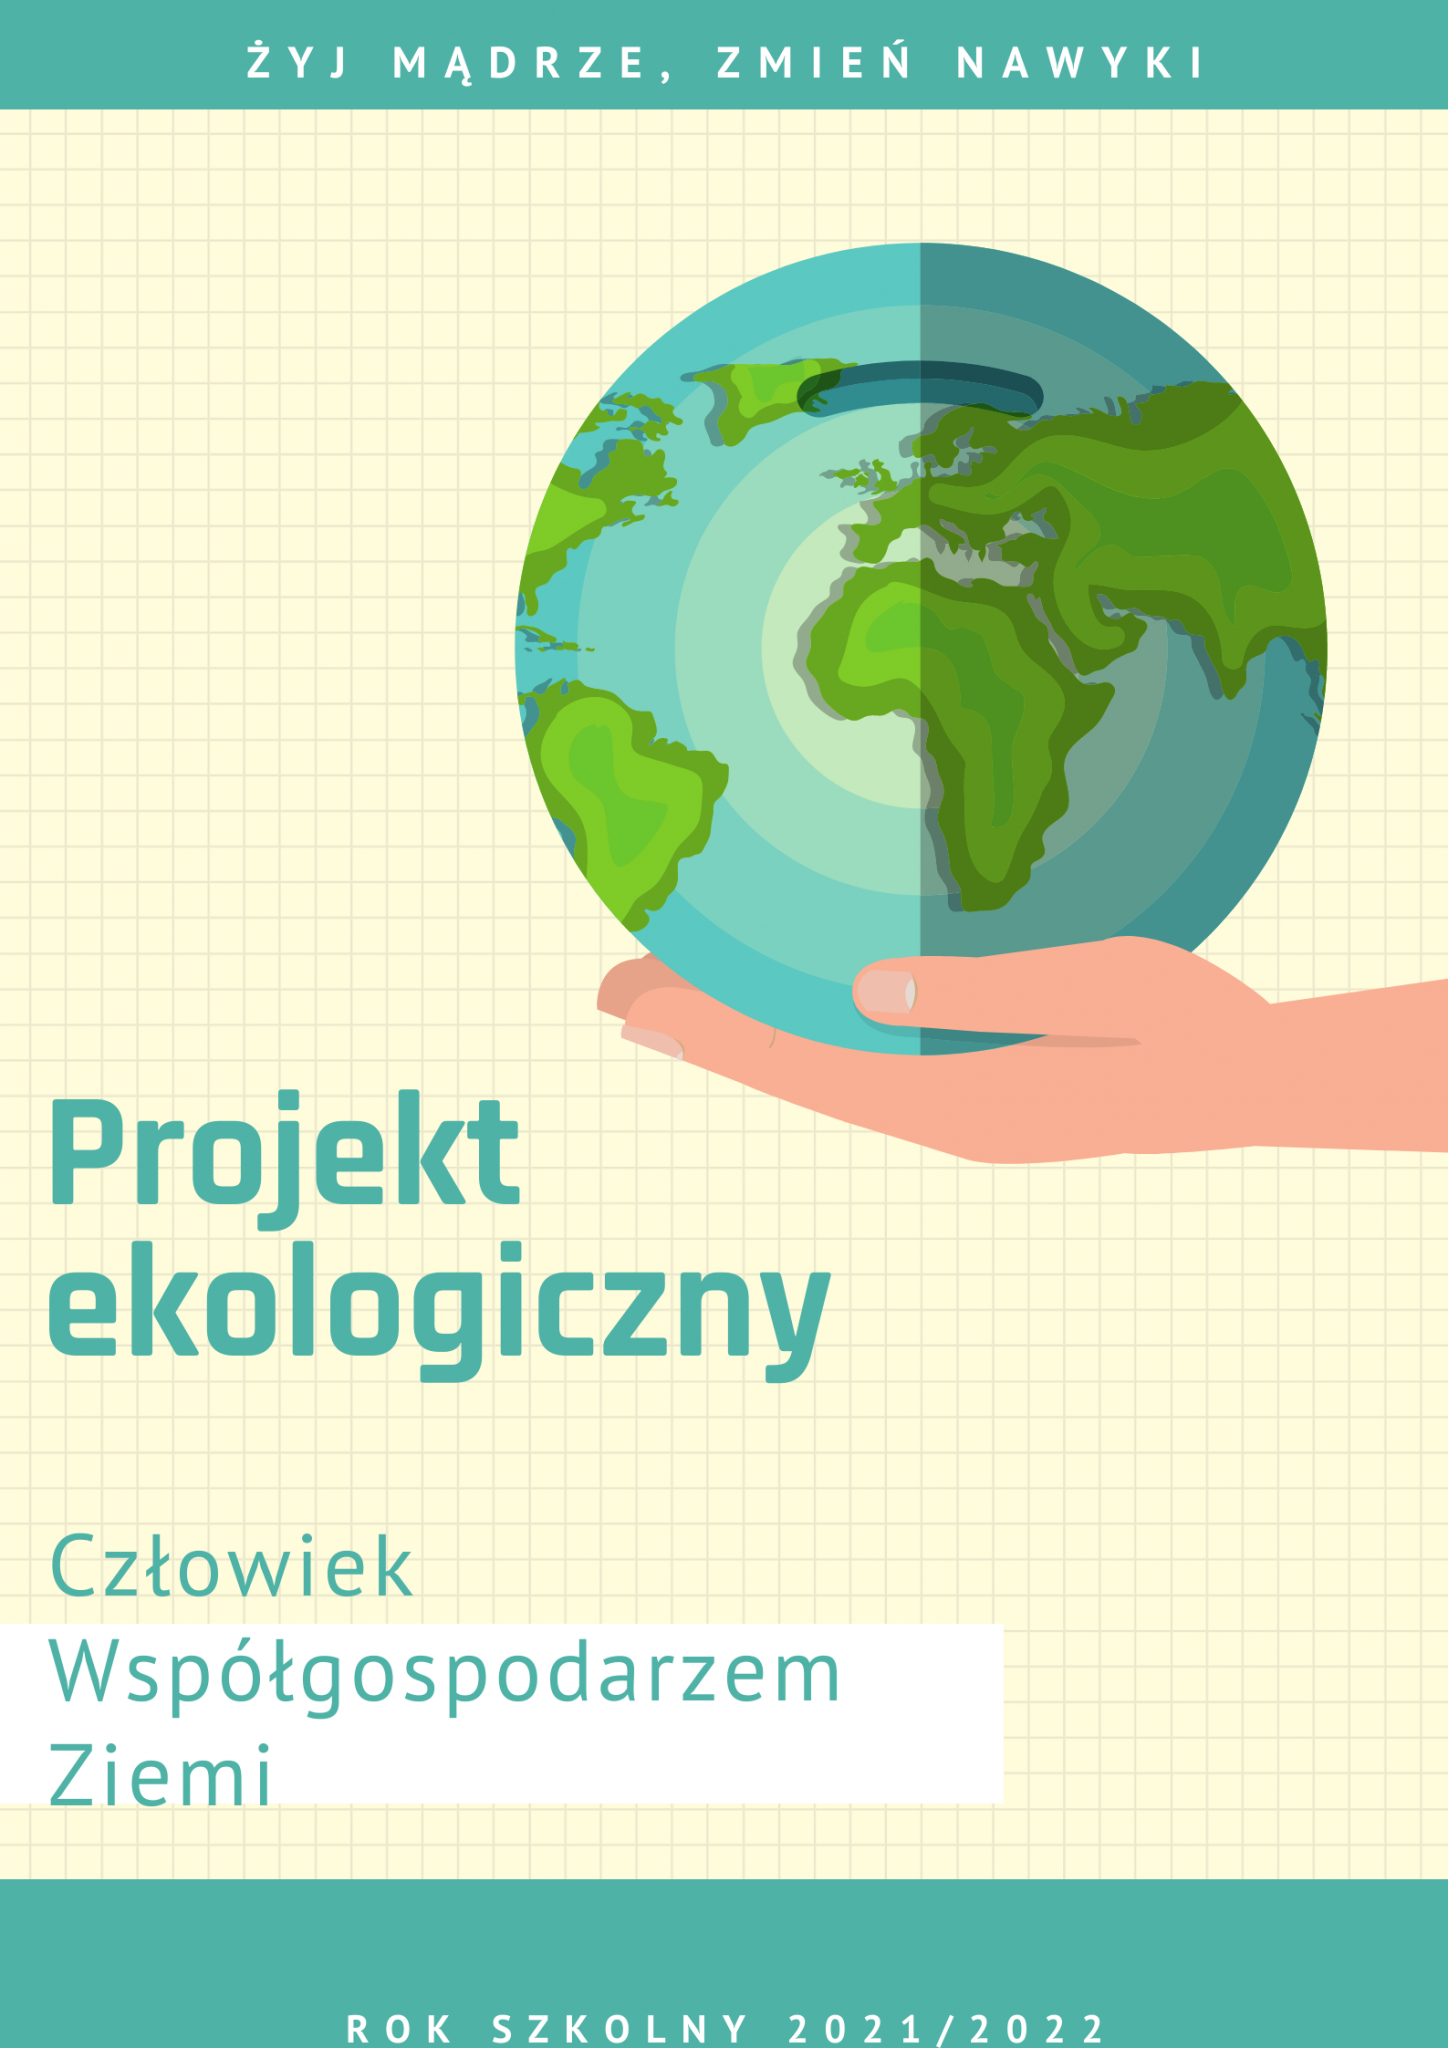 Projekt ekologiczny „Człowiek współgospodarzem Ziemi” dla chętnych uczniów klas siódmych i ósmych